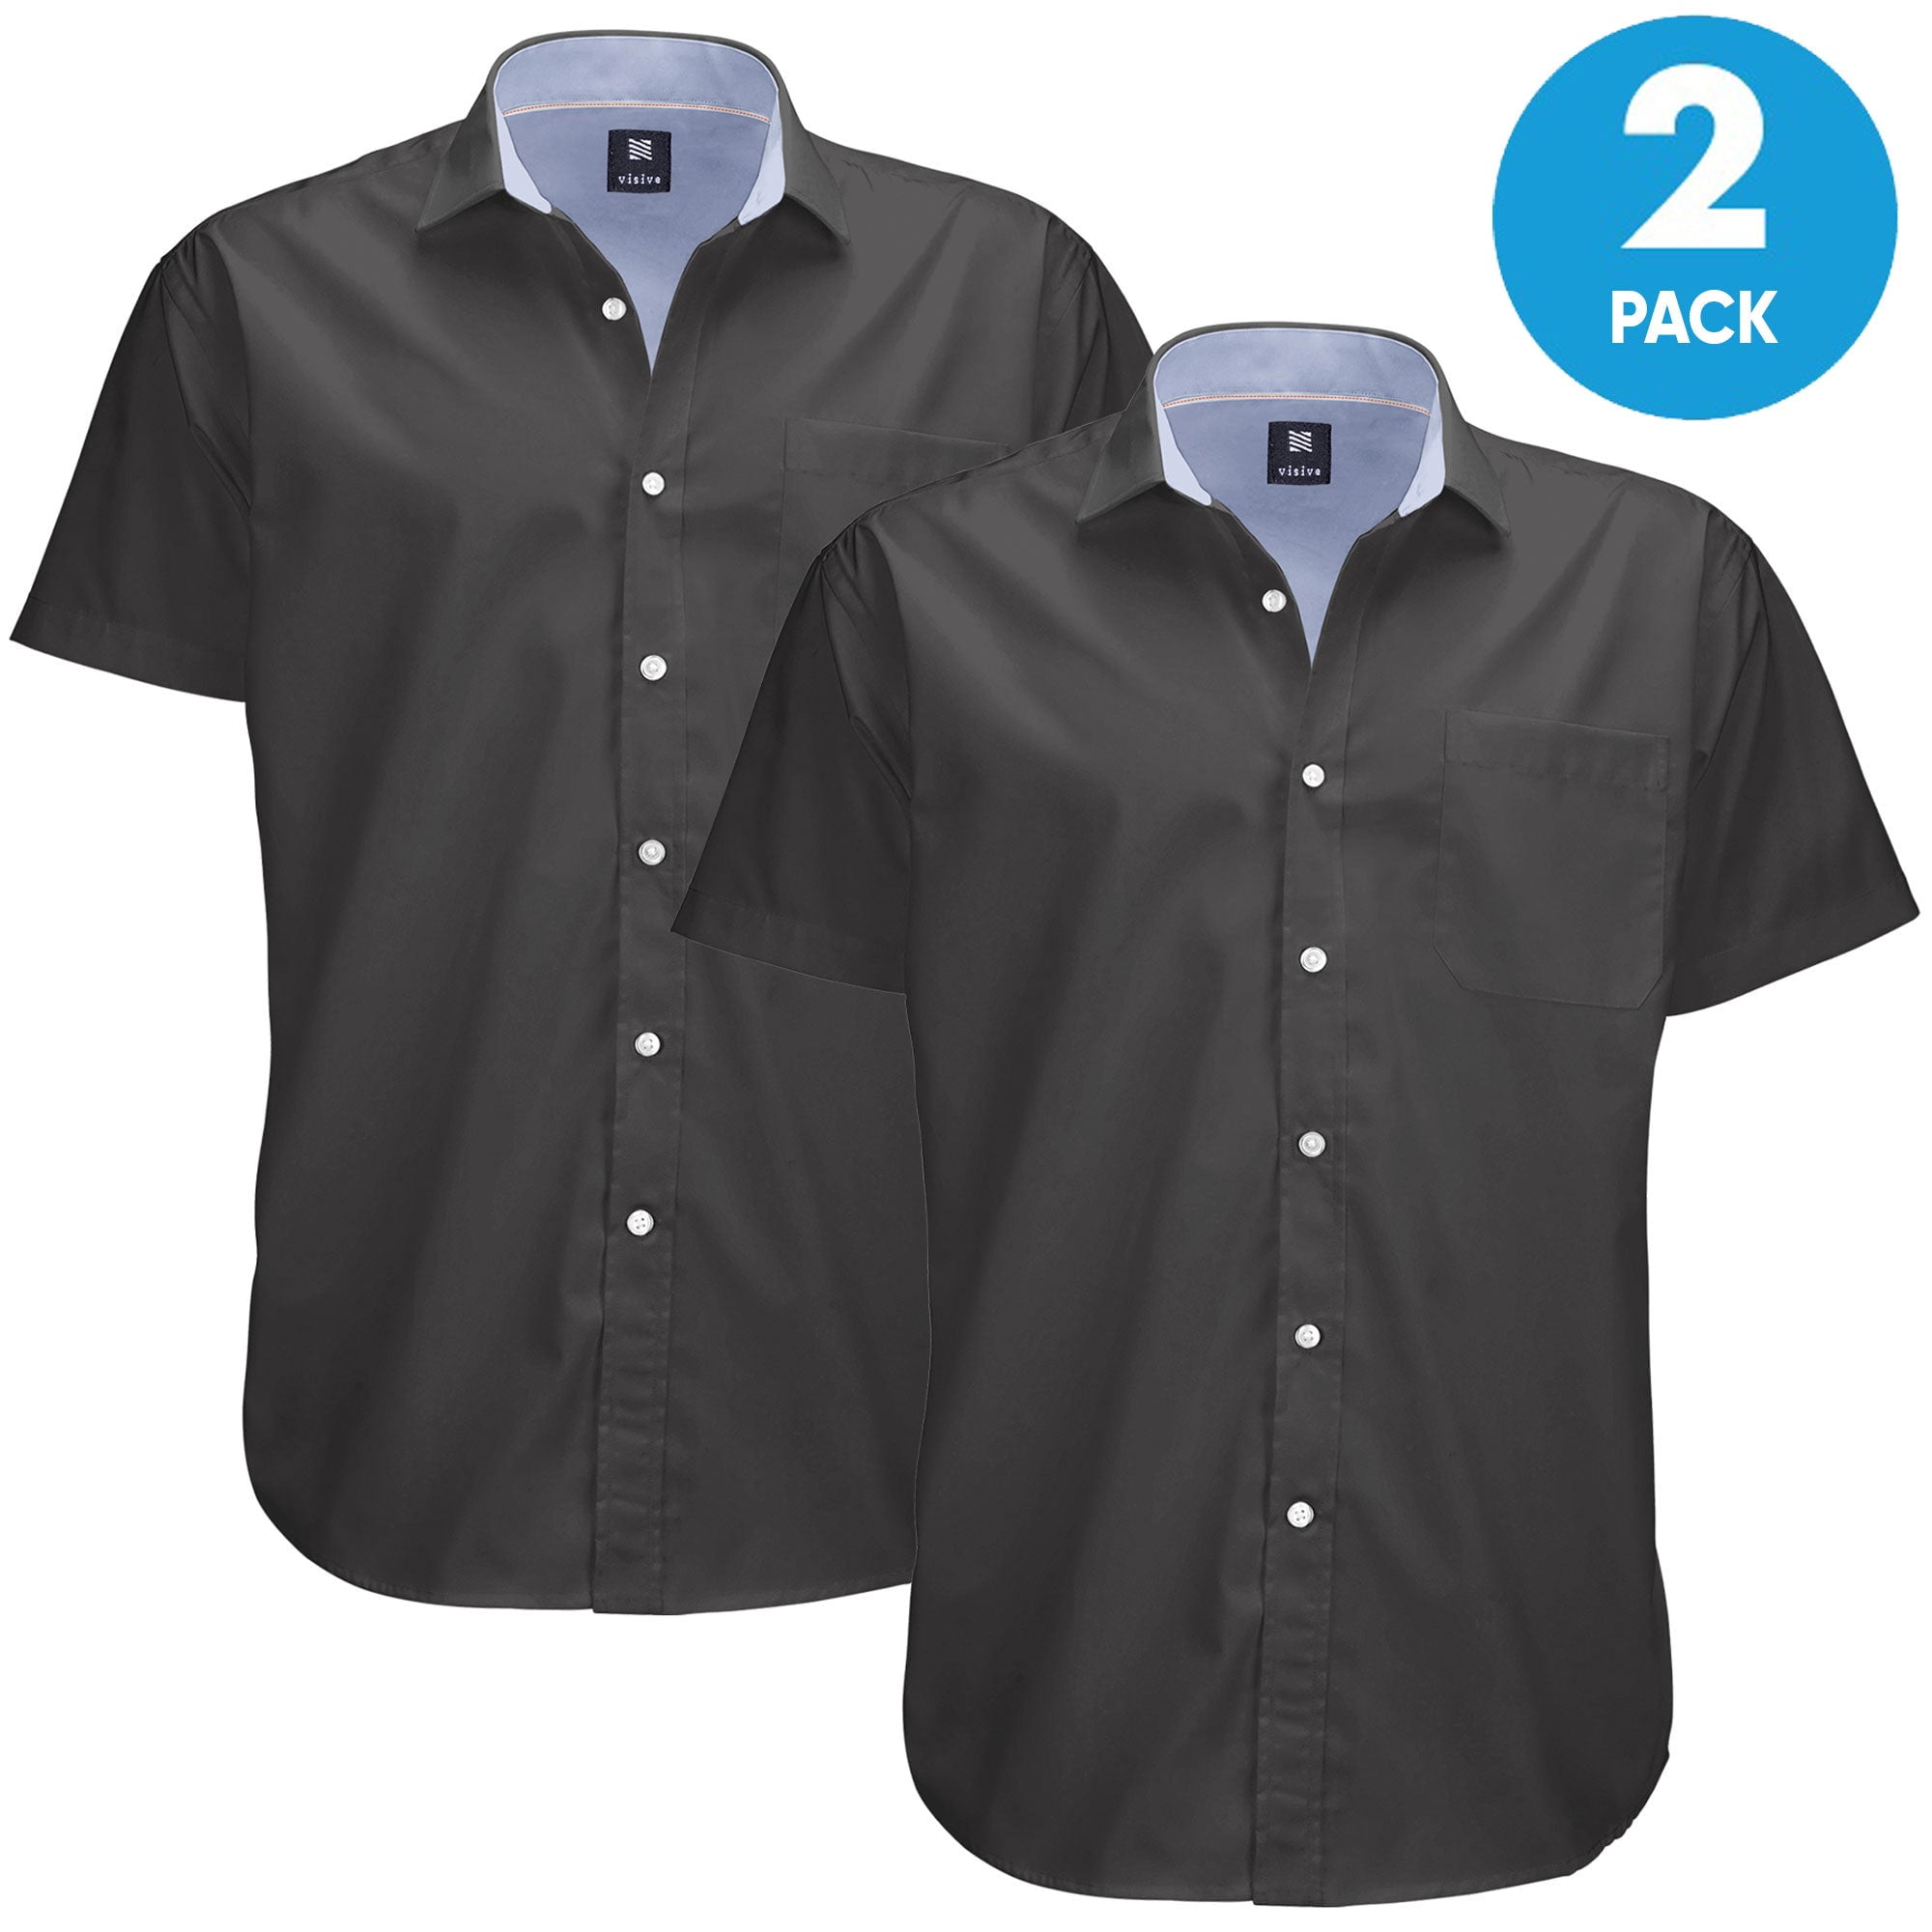 Wehilion Men's Slim Fit Suit One Button 3-Piece Blazer Dress